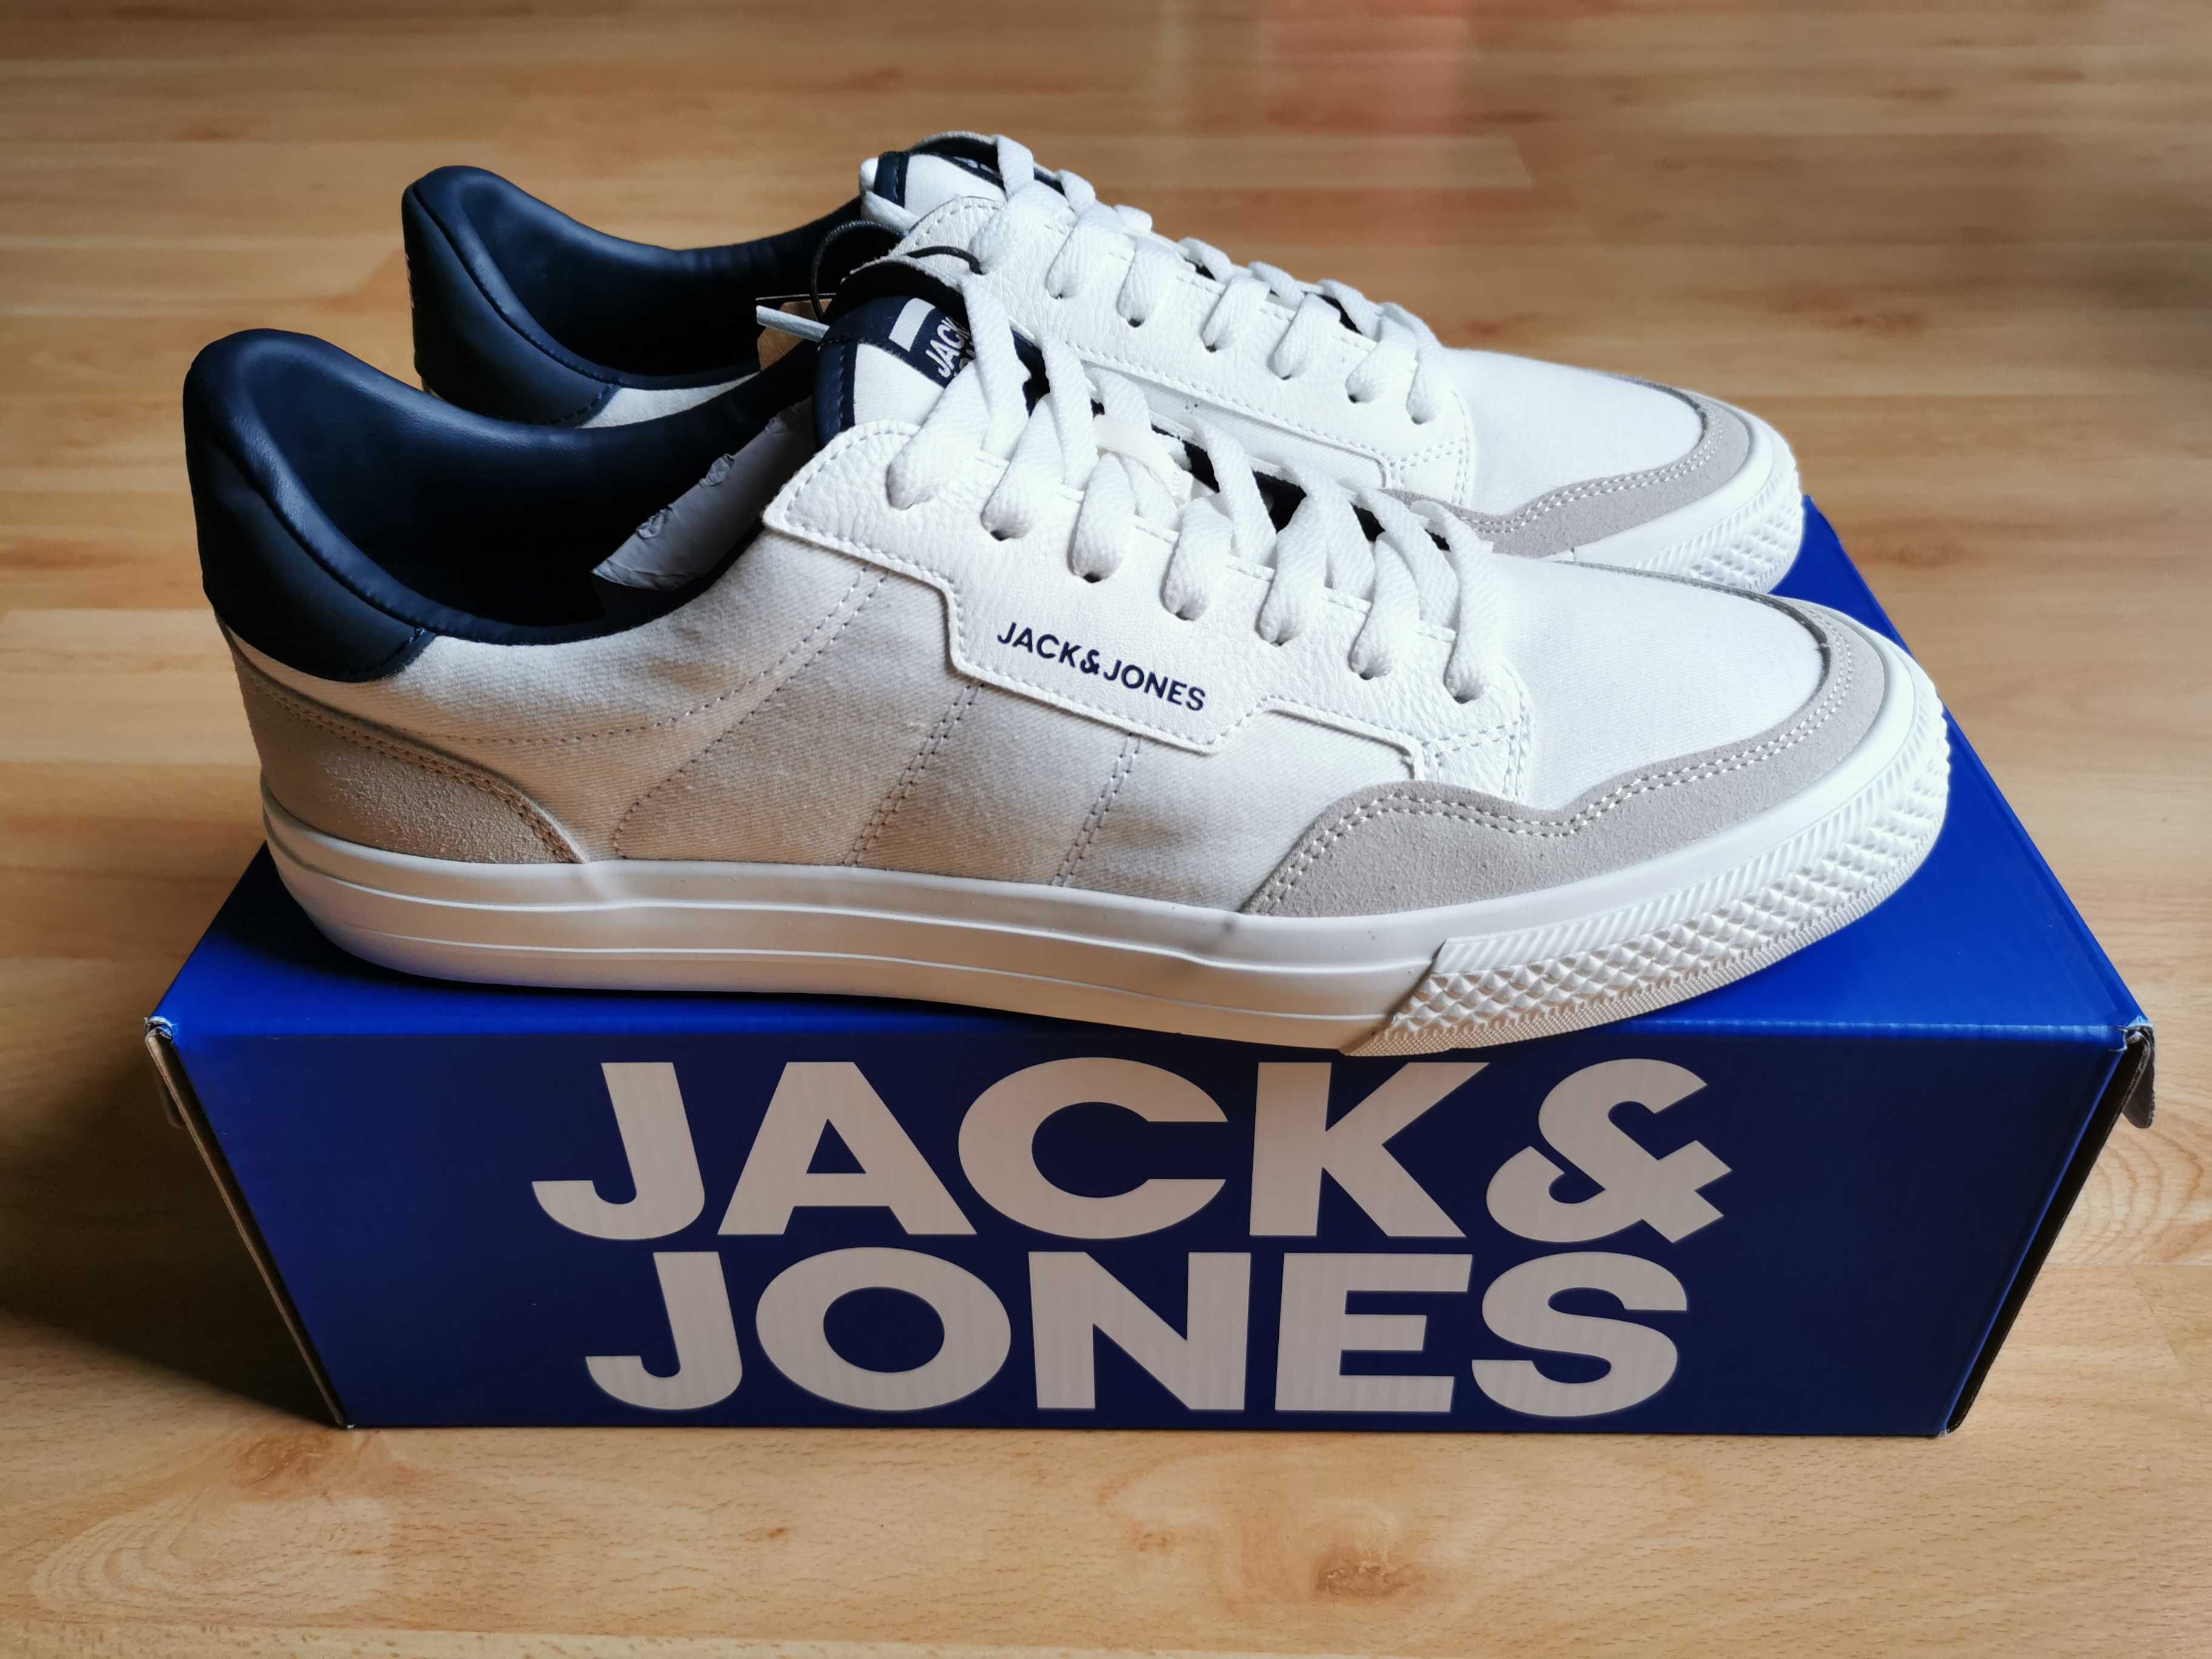 Jack & Jones buty trampki sneakers nowe 45